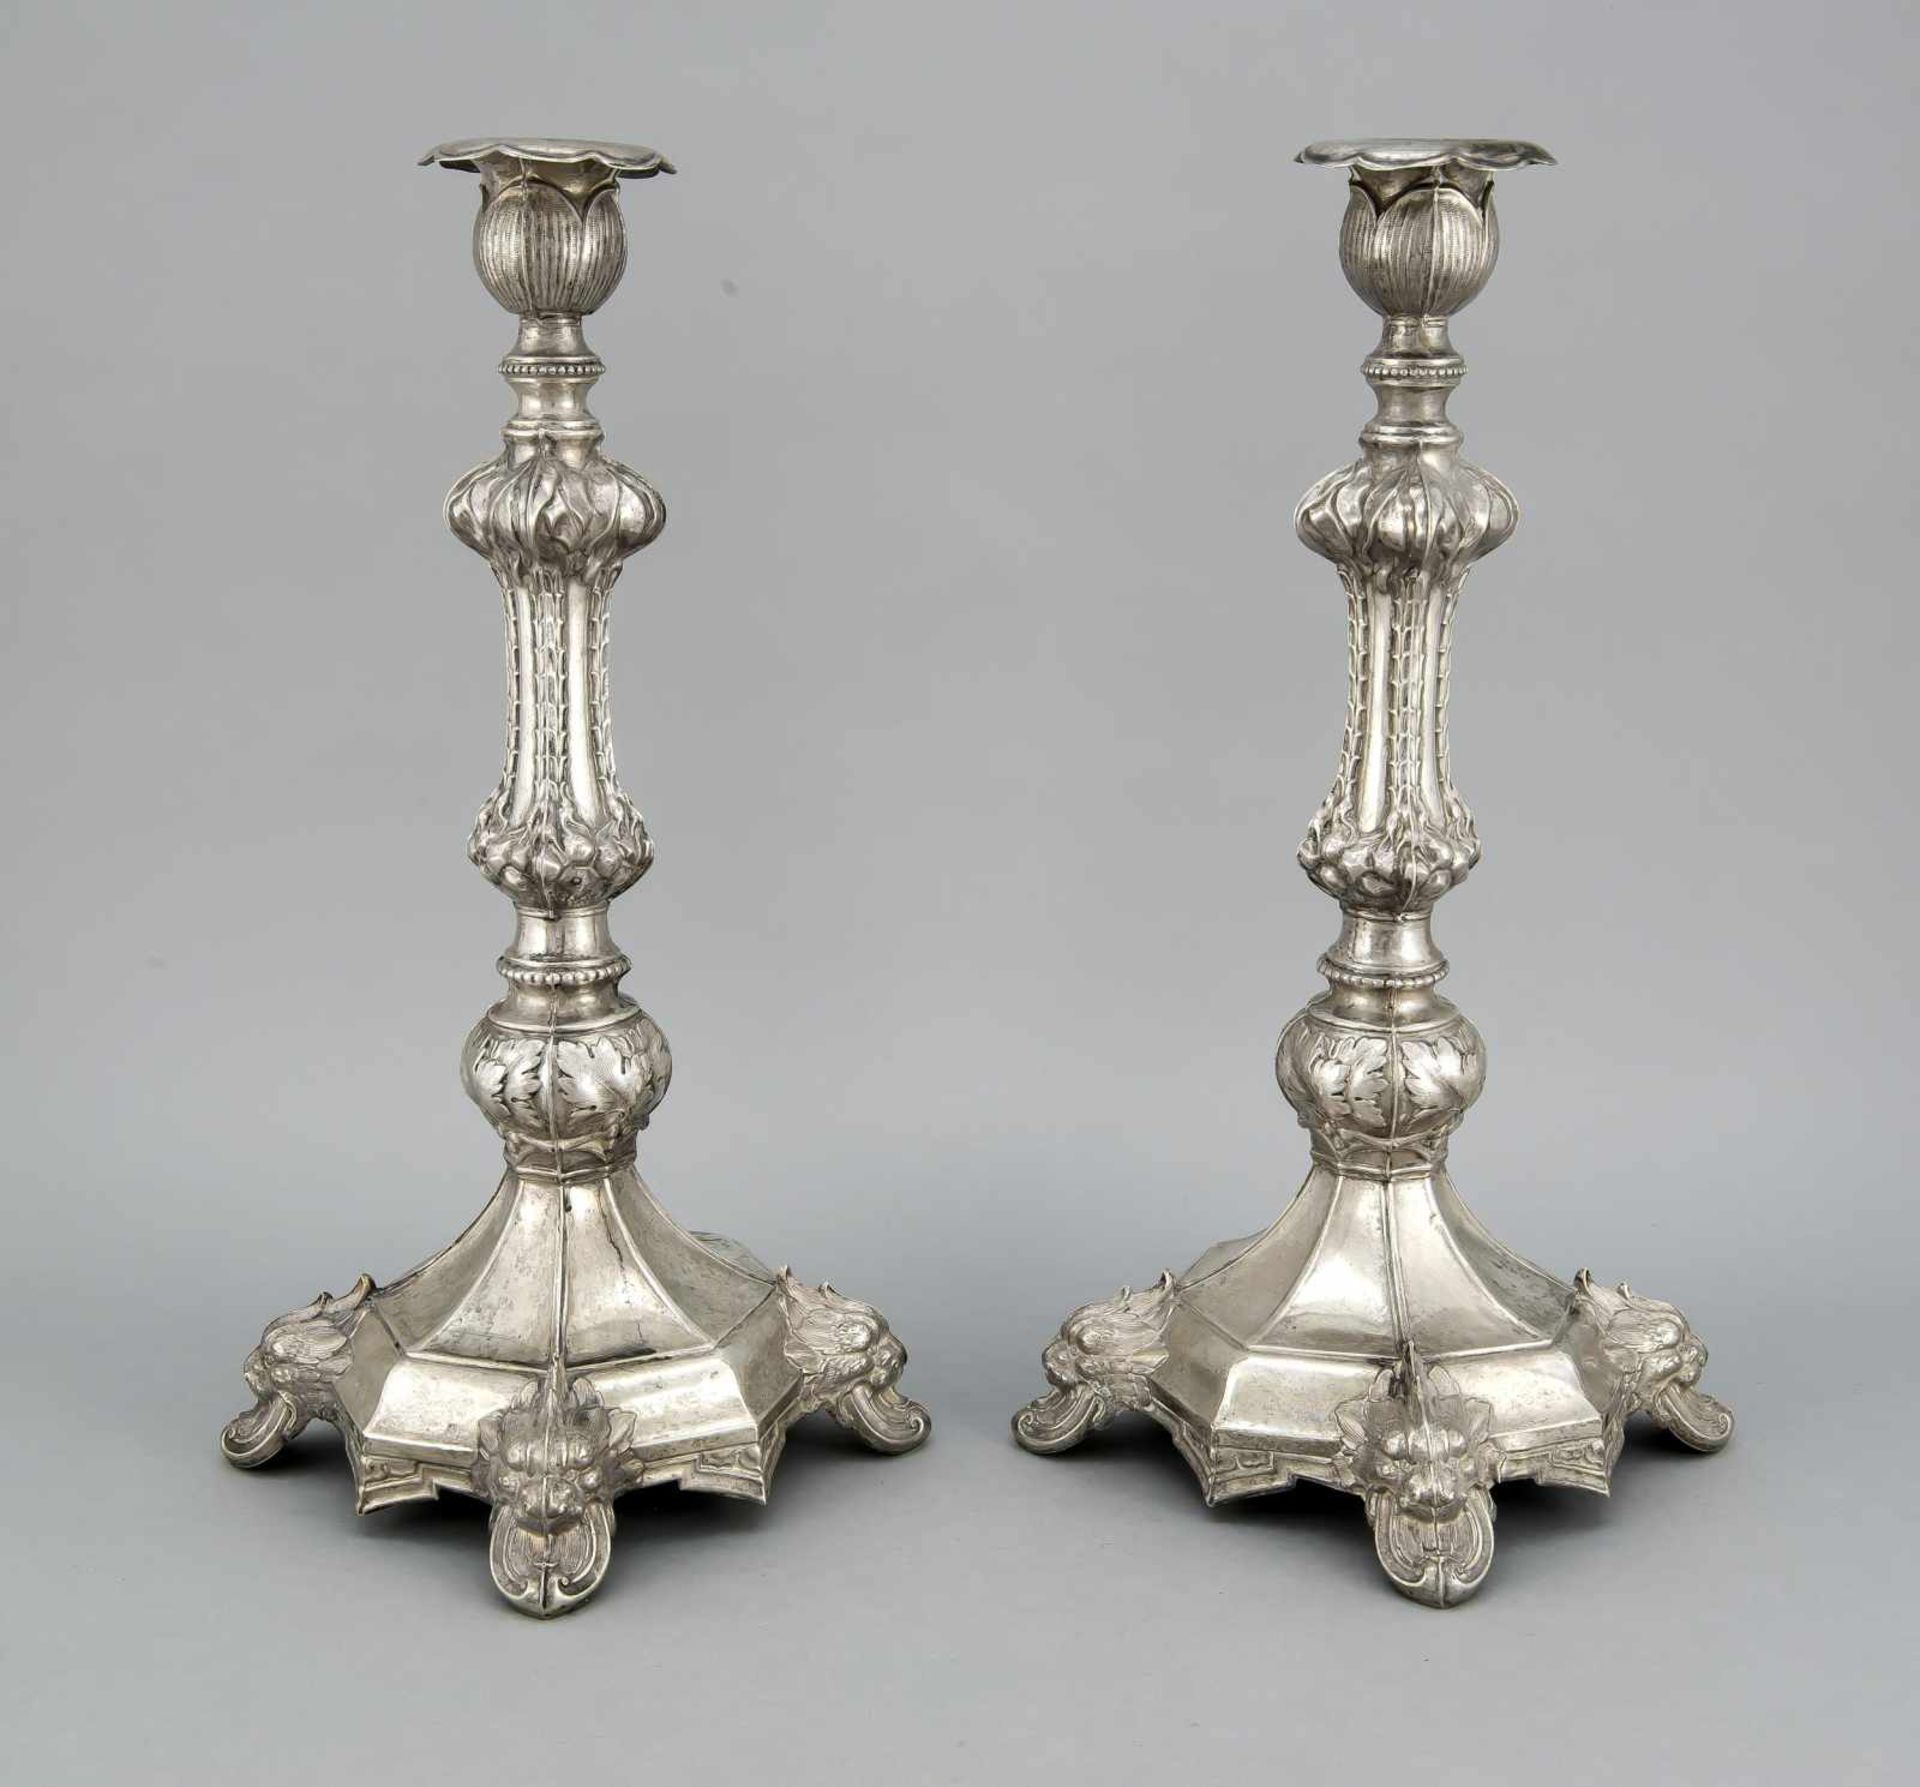 Leuchterpaar, Österreich, um 1880, Meister HS, Silber 800/000, 8-eckiger Stand auf 4 Füßen mit